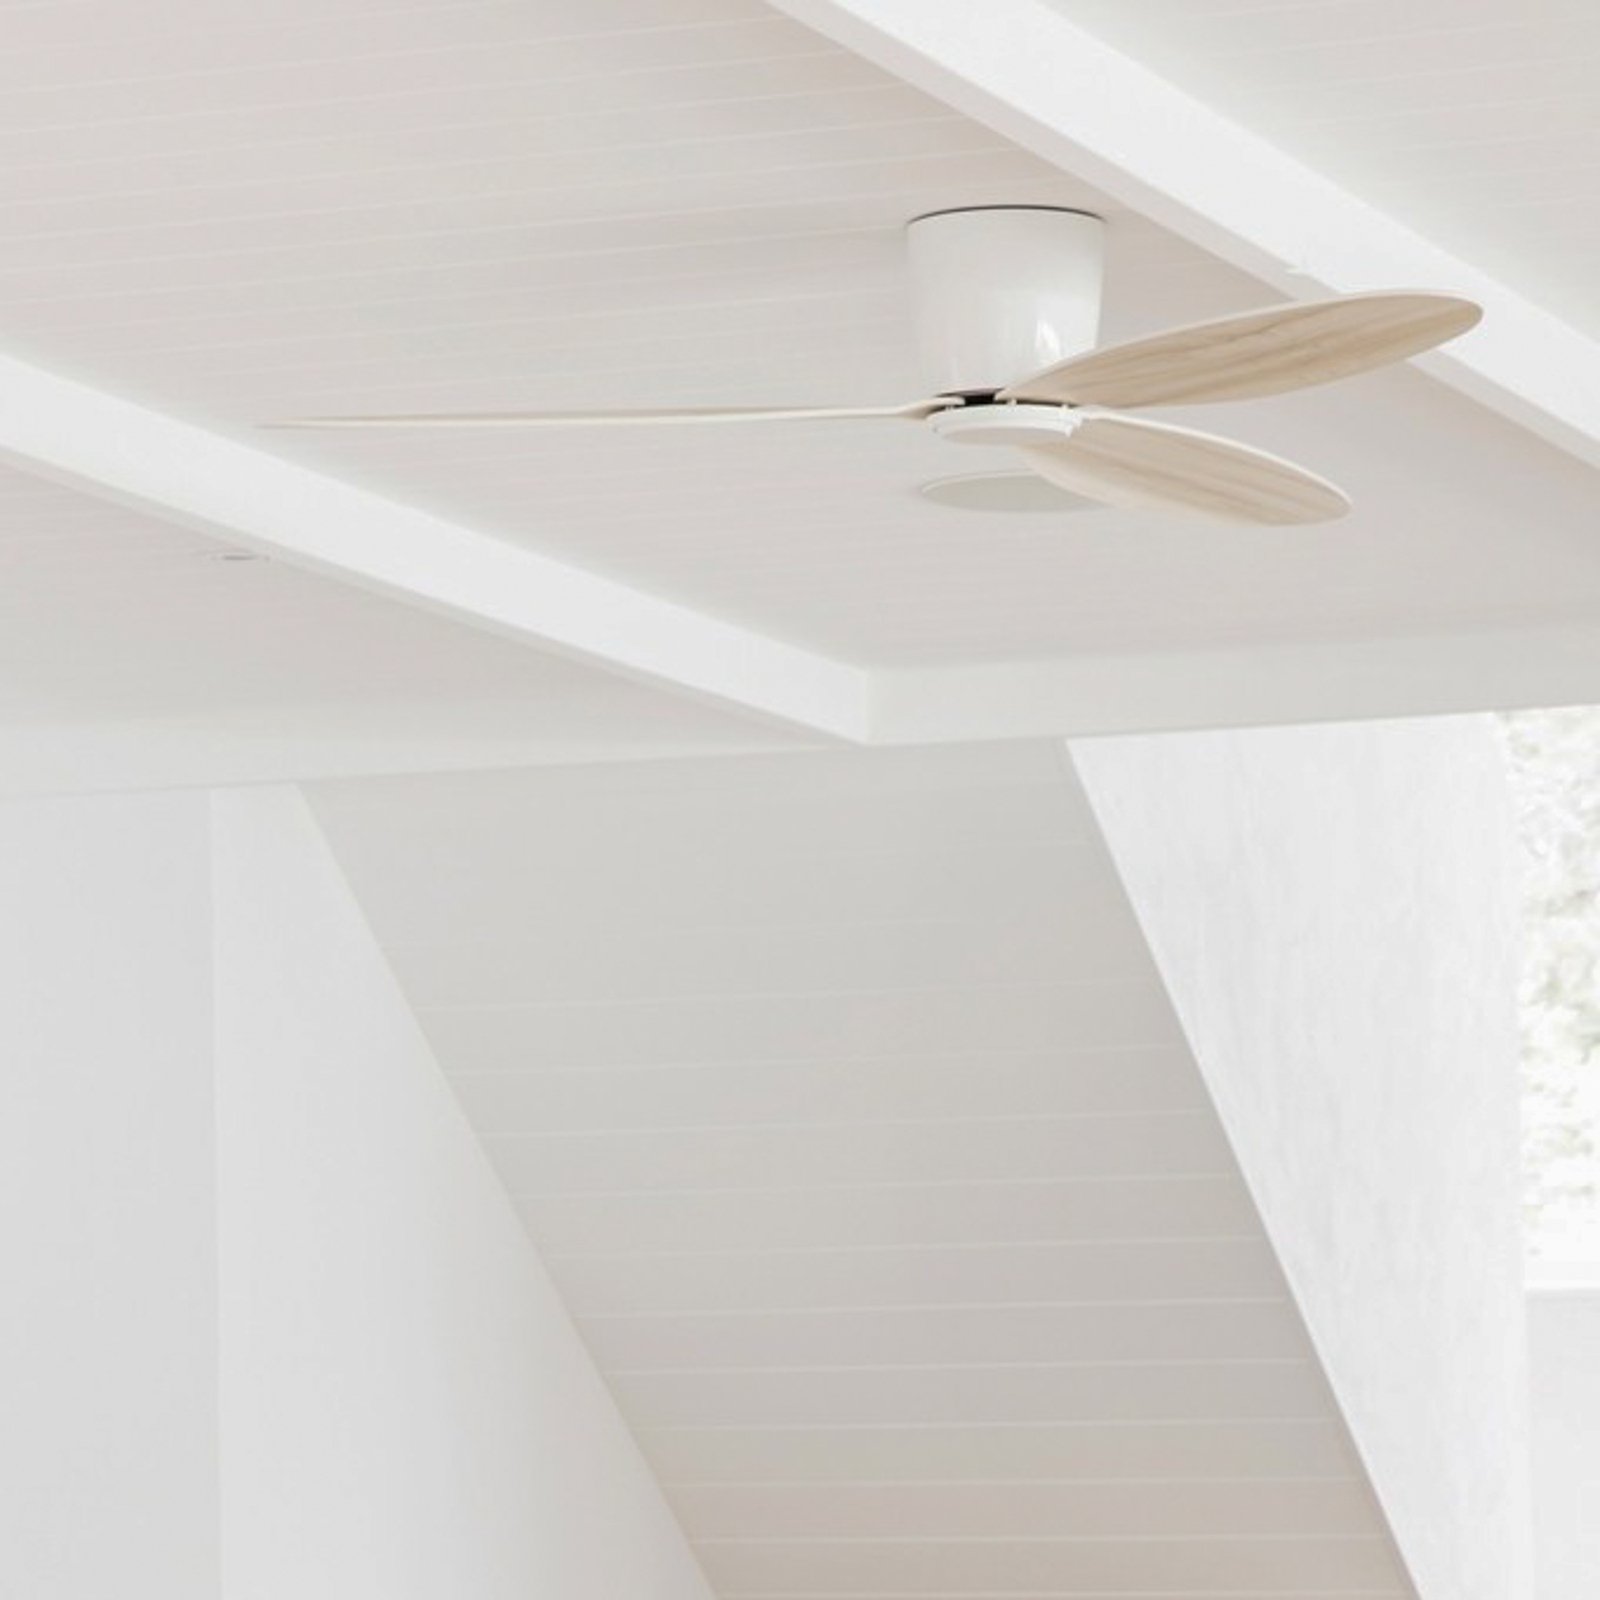 Beacon ceiling fan Airfusion Radar oak/white DC quiet